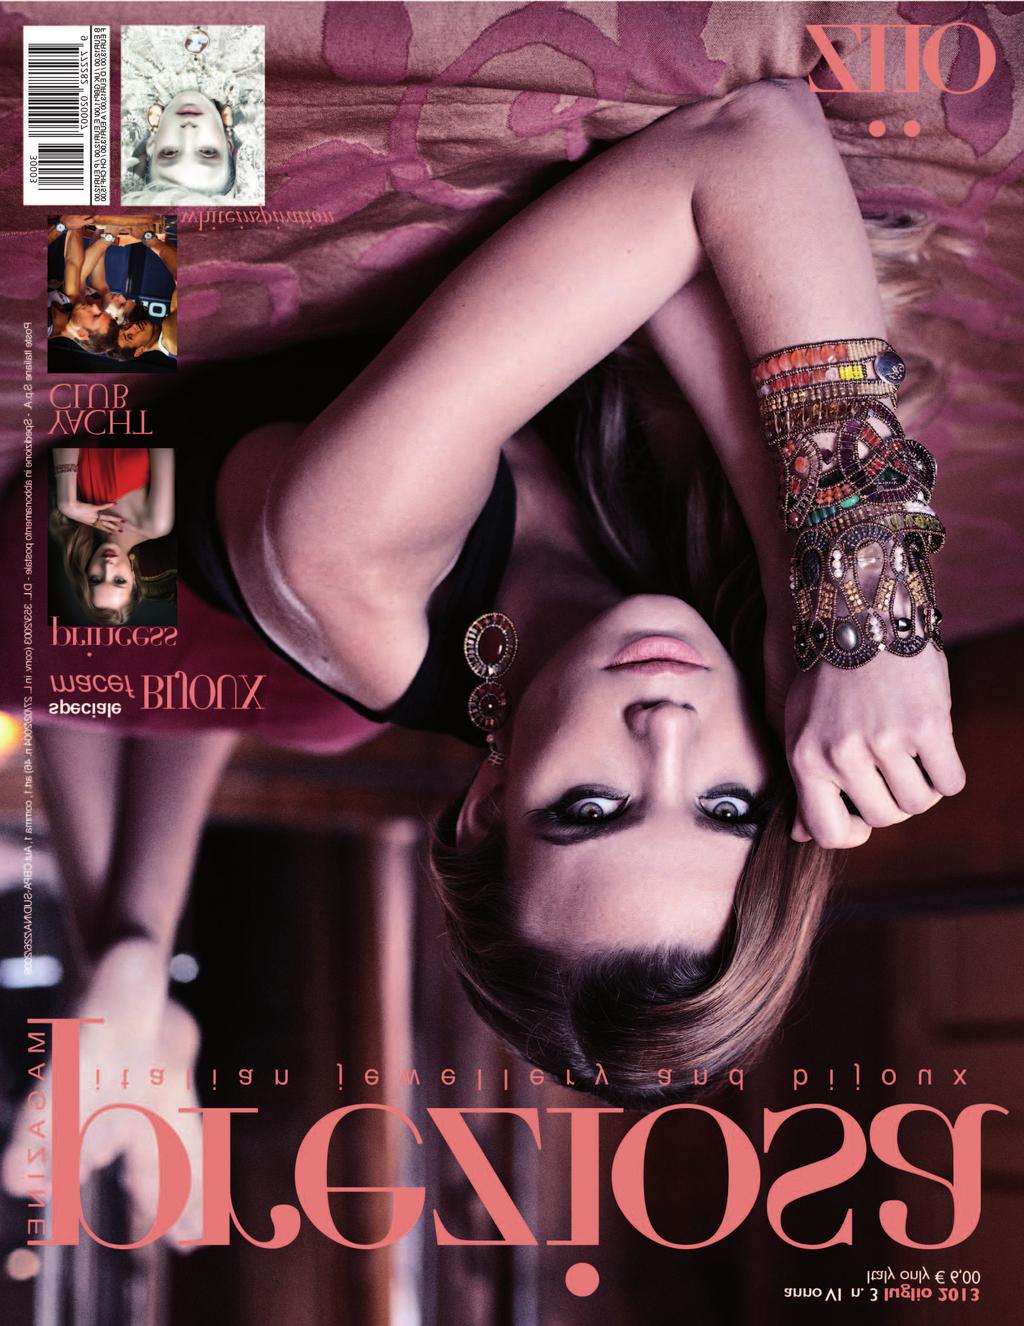 preziosa magazine è la rivista internazionale edita da loiralab dedicata al mercato della gioielleria, dell orologeria, del bijou e dell accessorio.